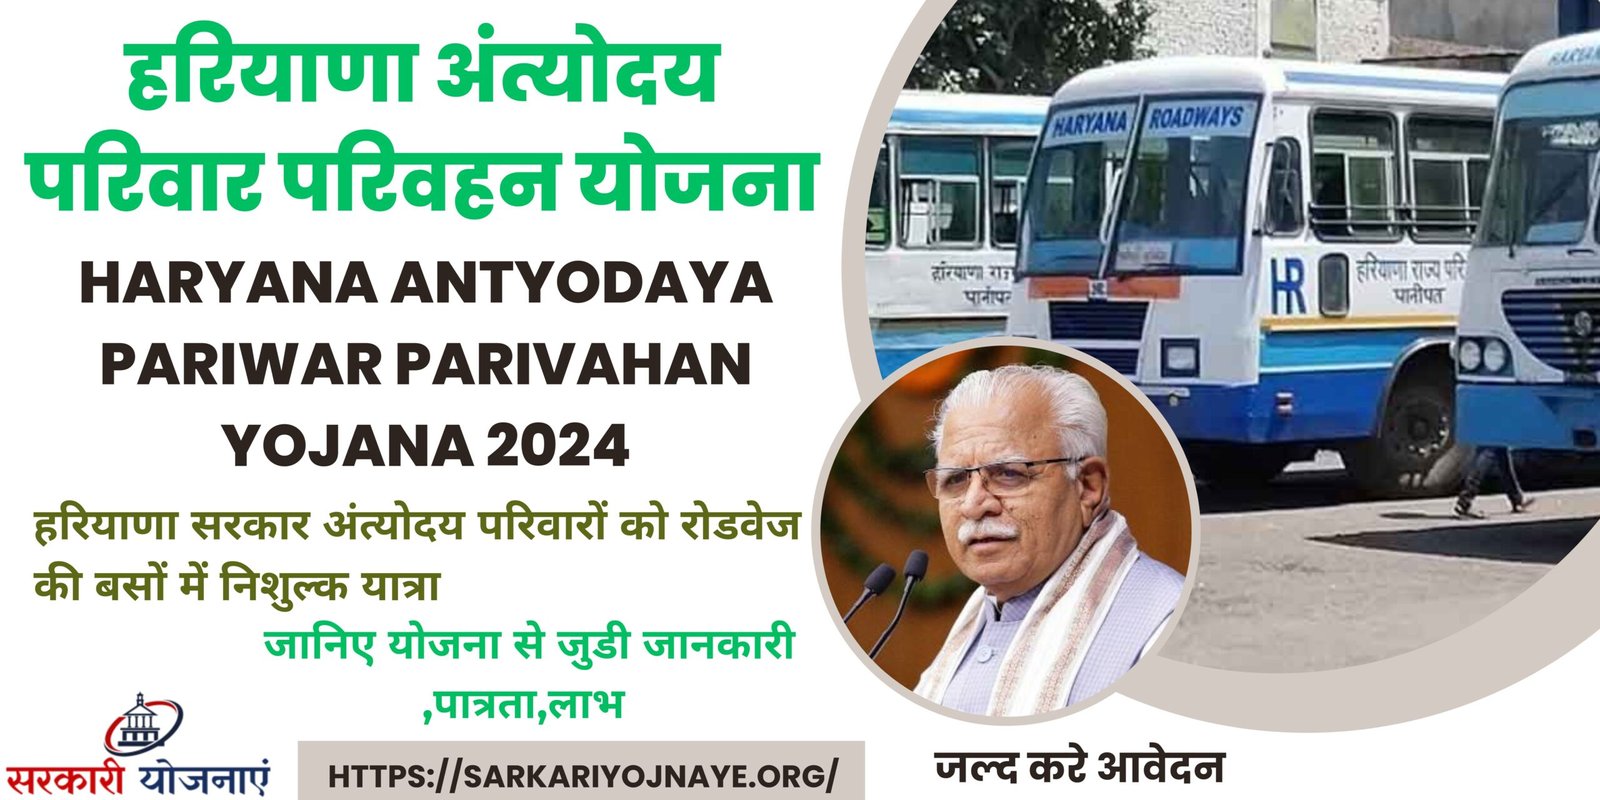 Haryana Antyodaya Pariwar Parivahan Yojana